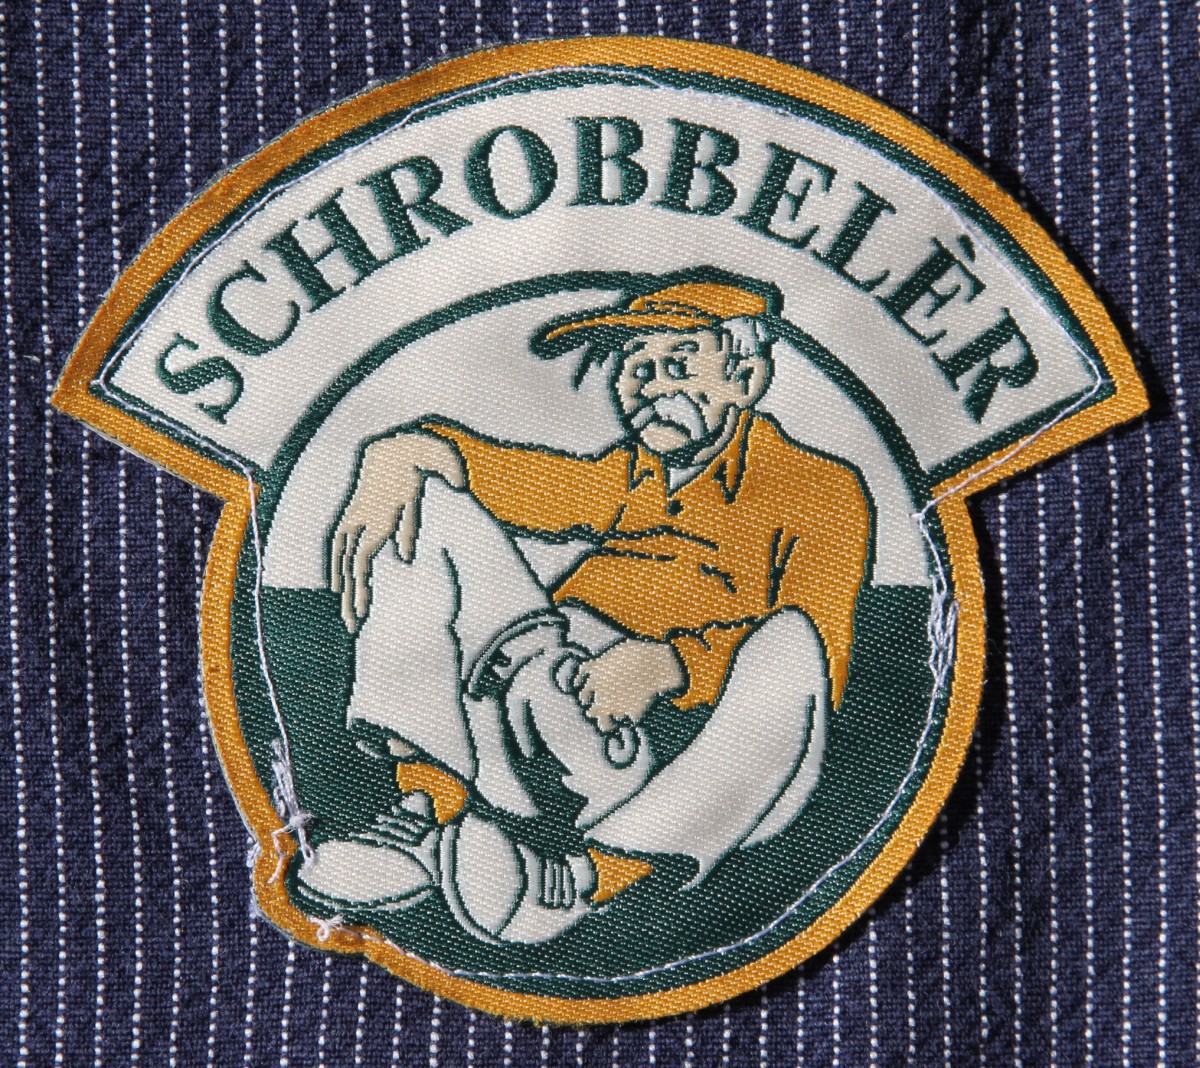 Schrobbeler